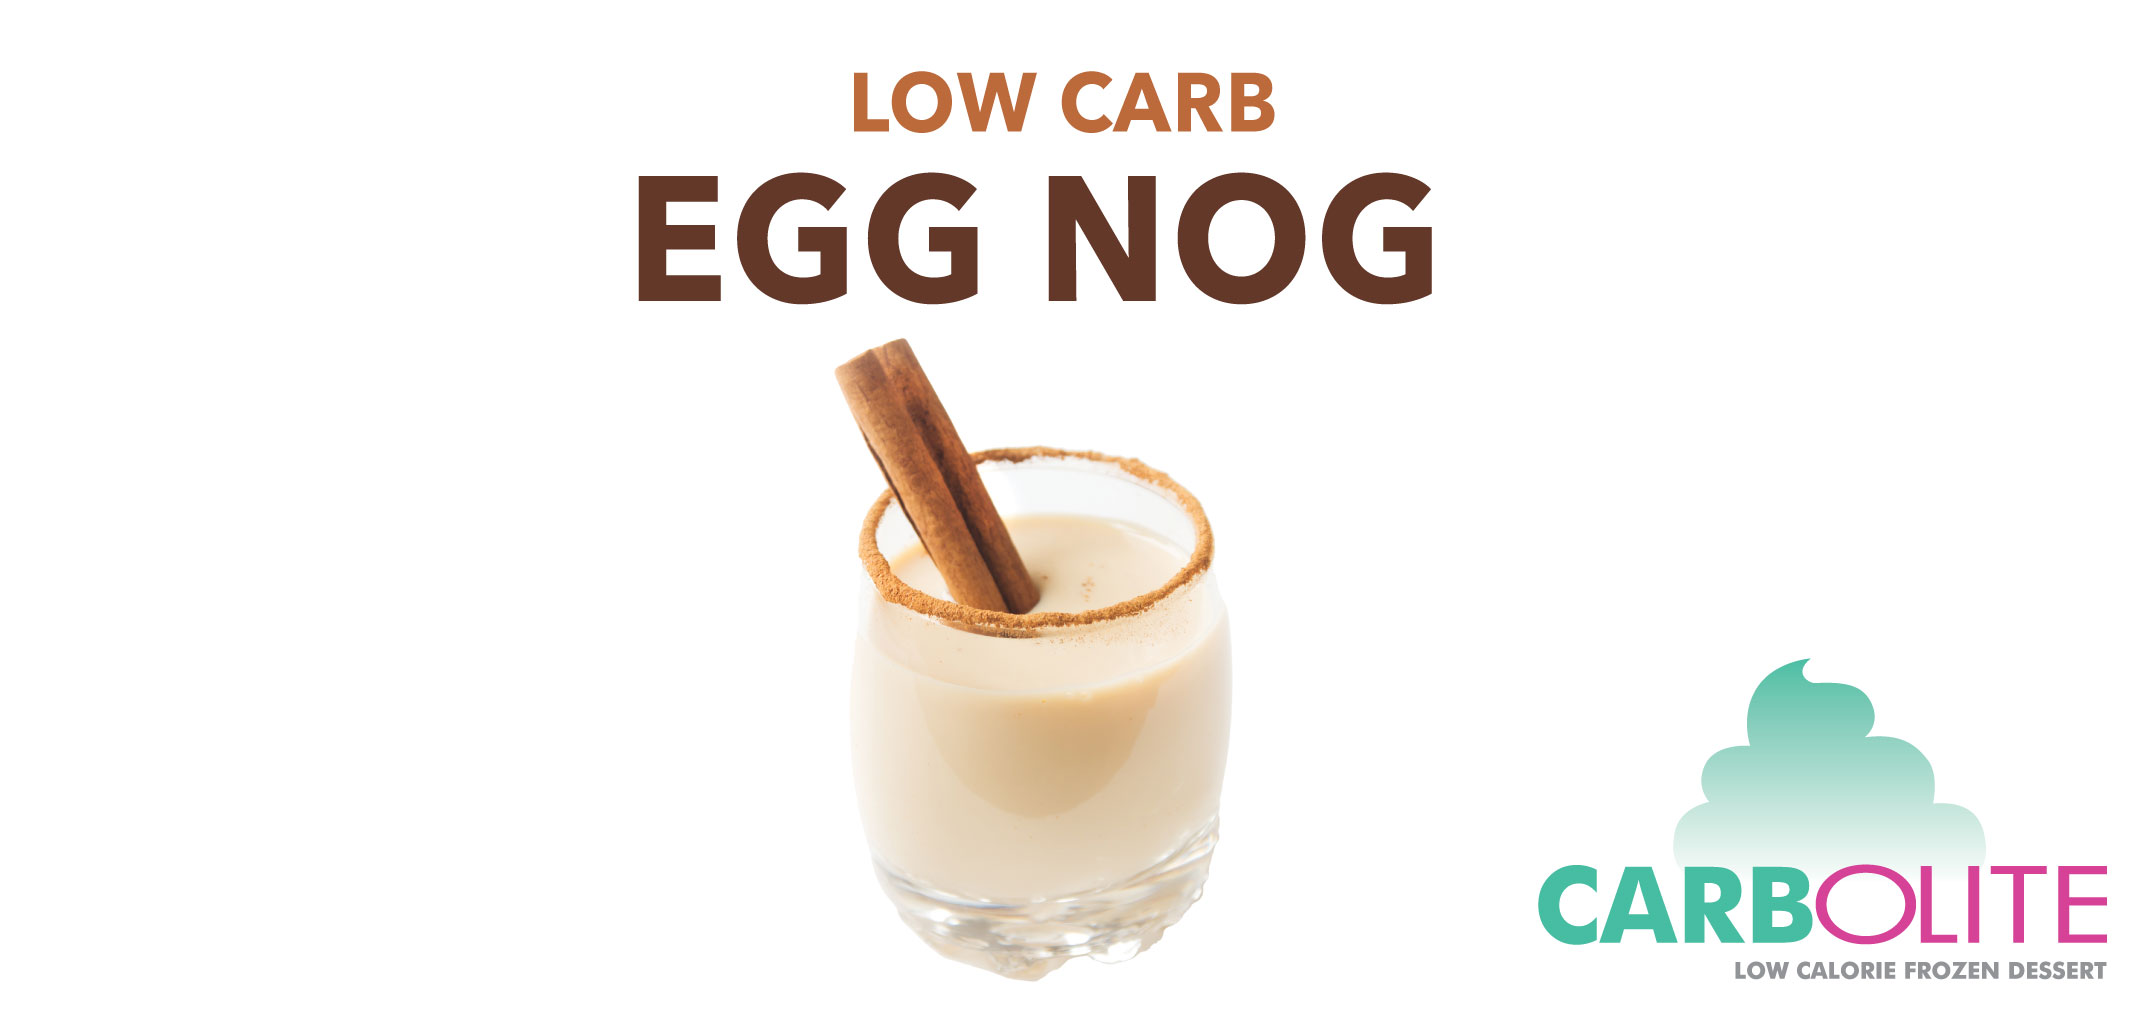 Carbolite Low Carb Egg Nog label image